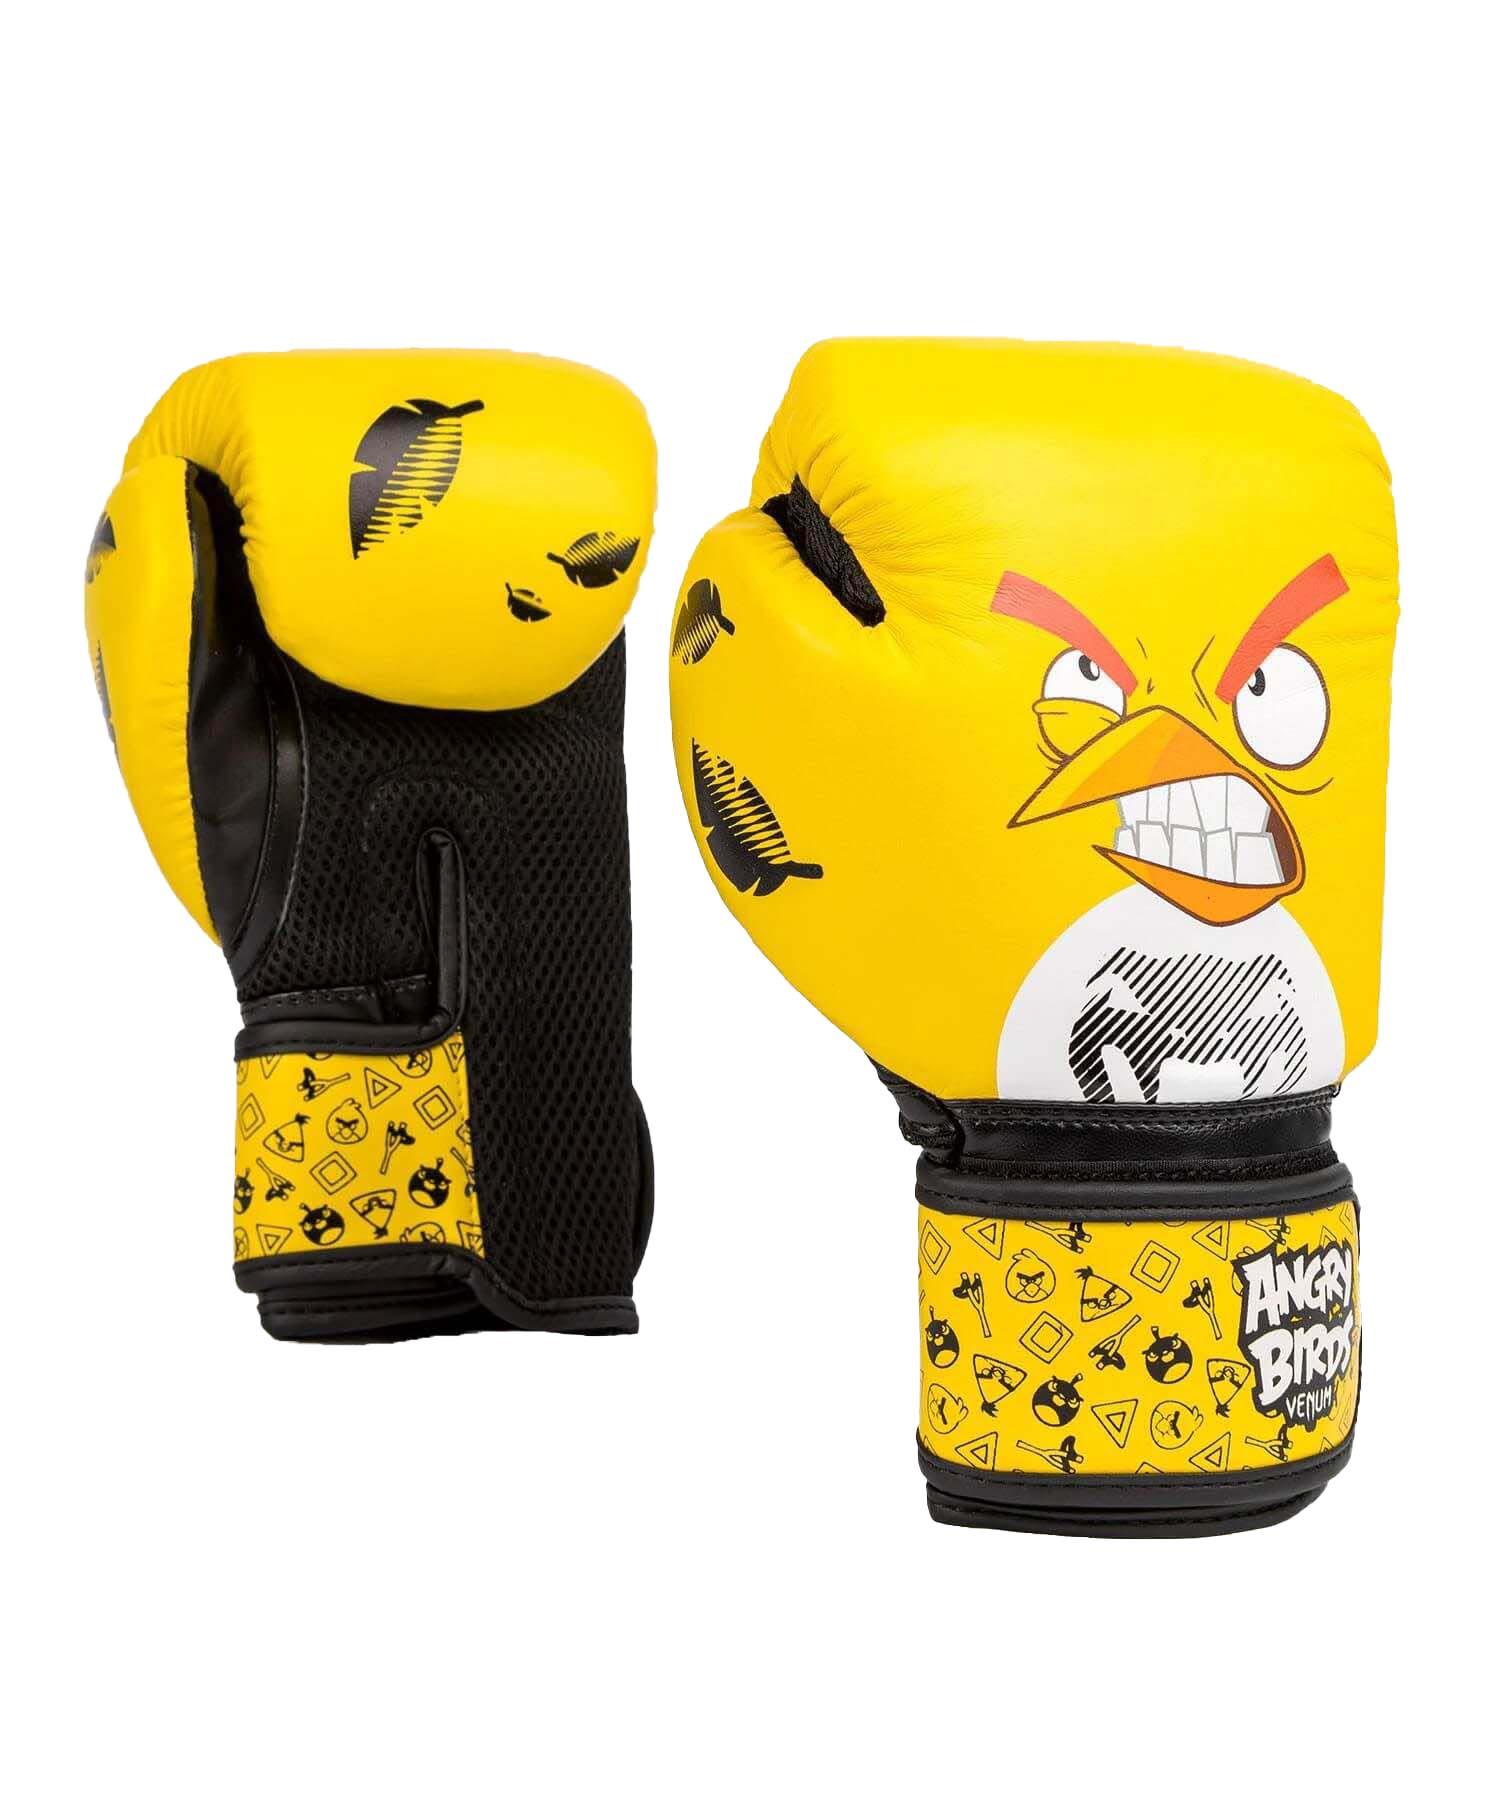 Dětské boxerské rukavice Angry Birds VENUM žluté vel. 8 oz